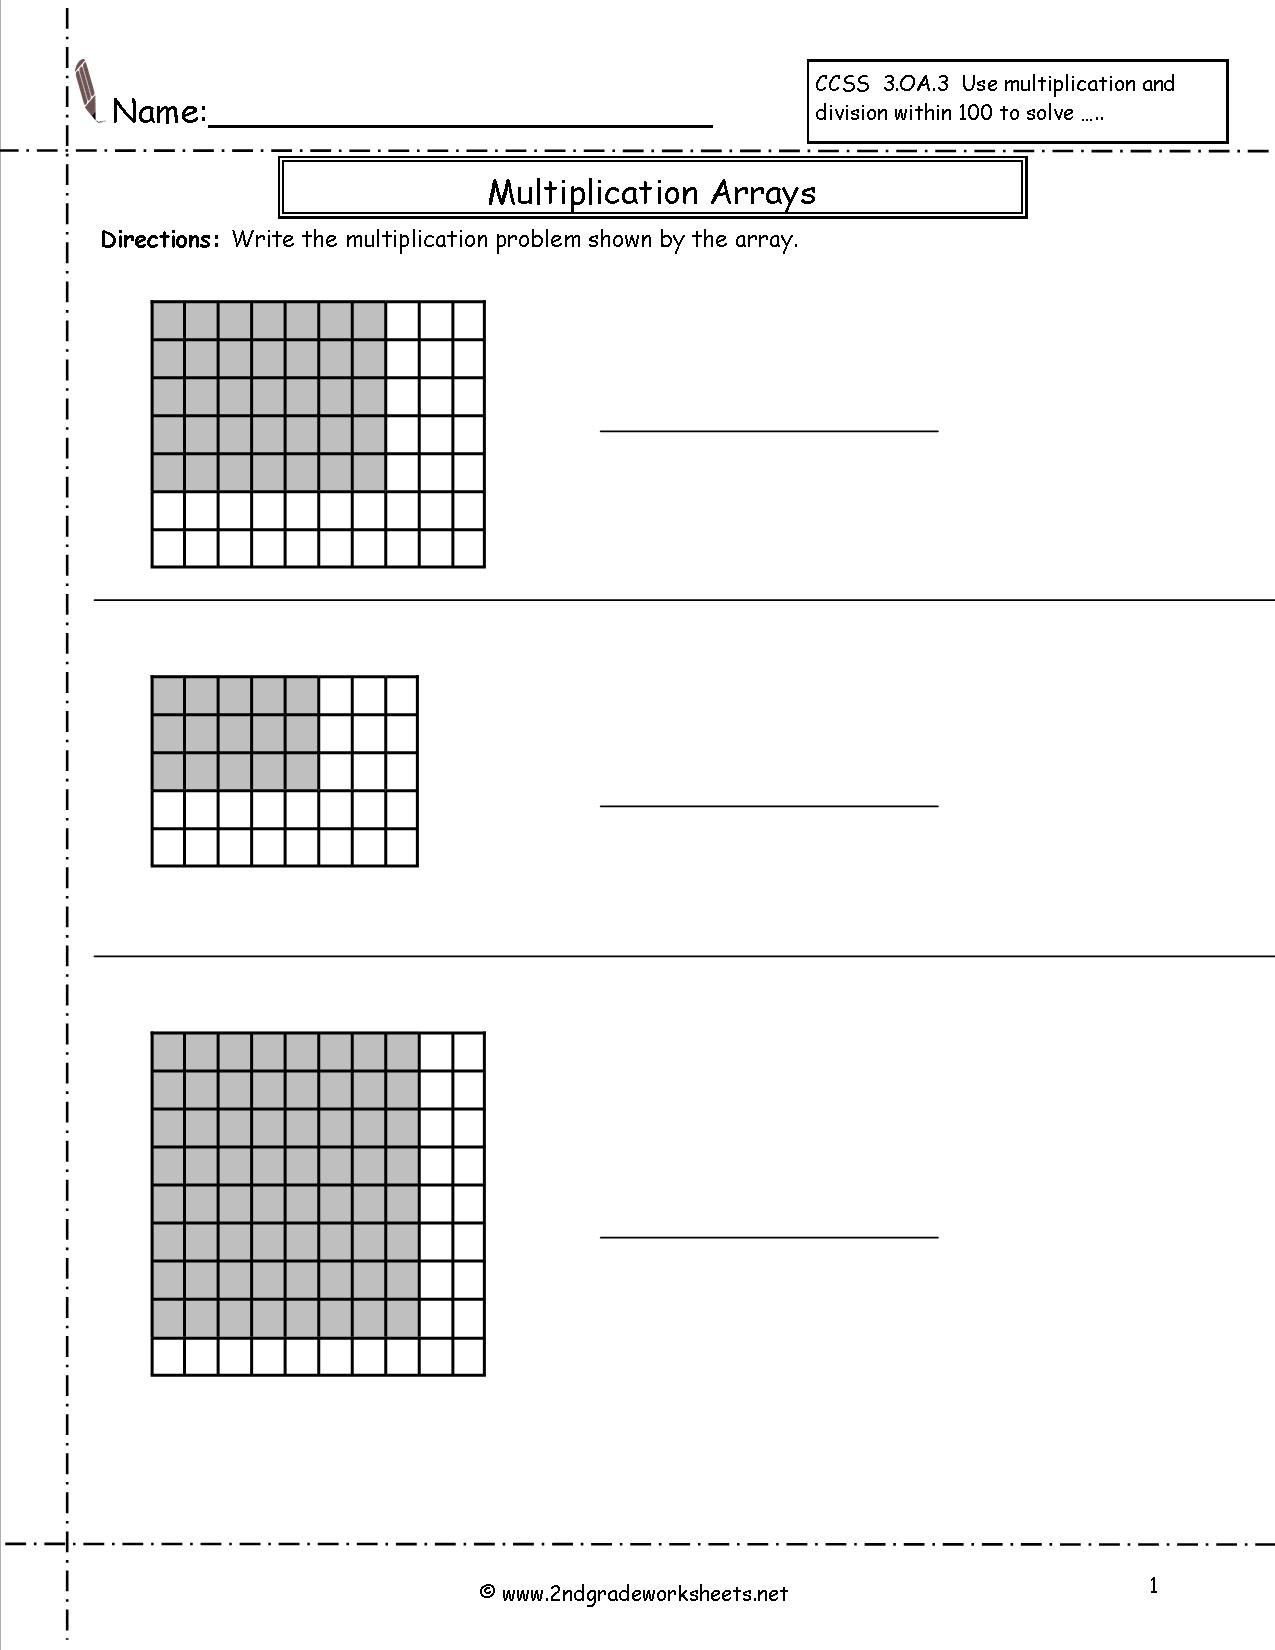 Multiplication Array Worksheets Grade 3 The Best Worksheets Image